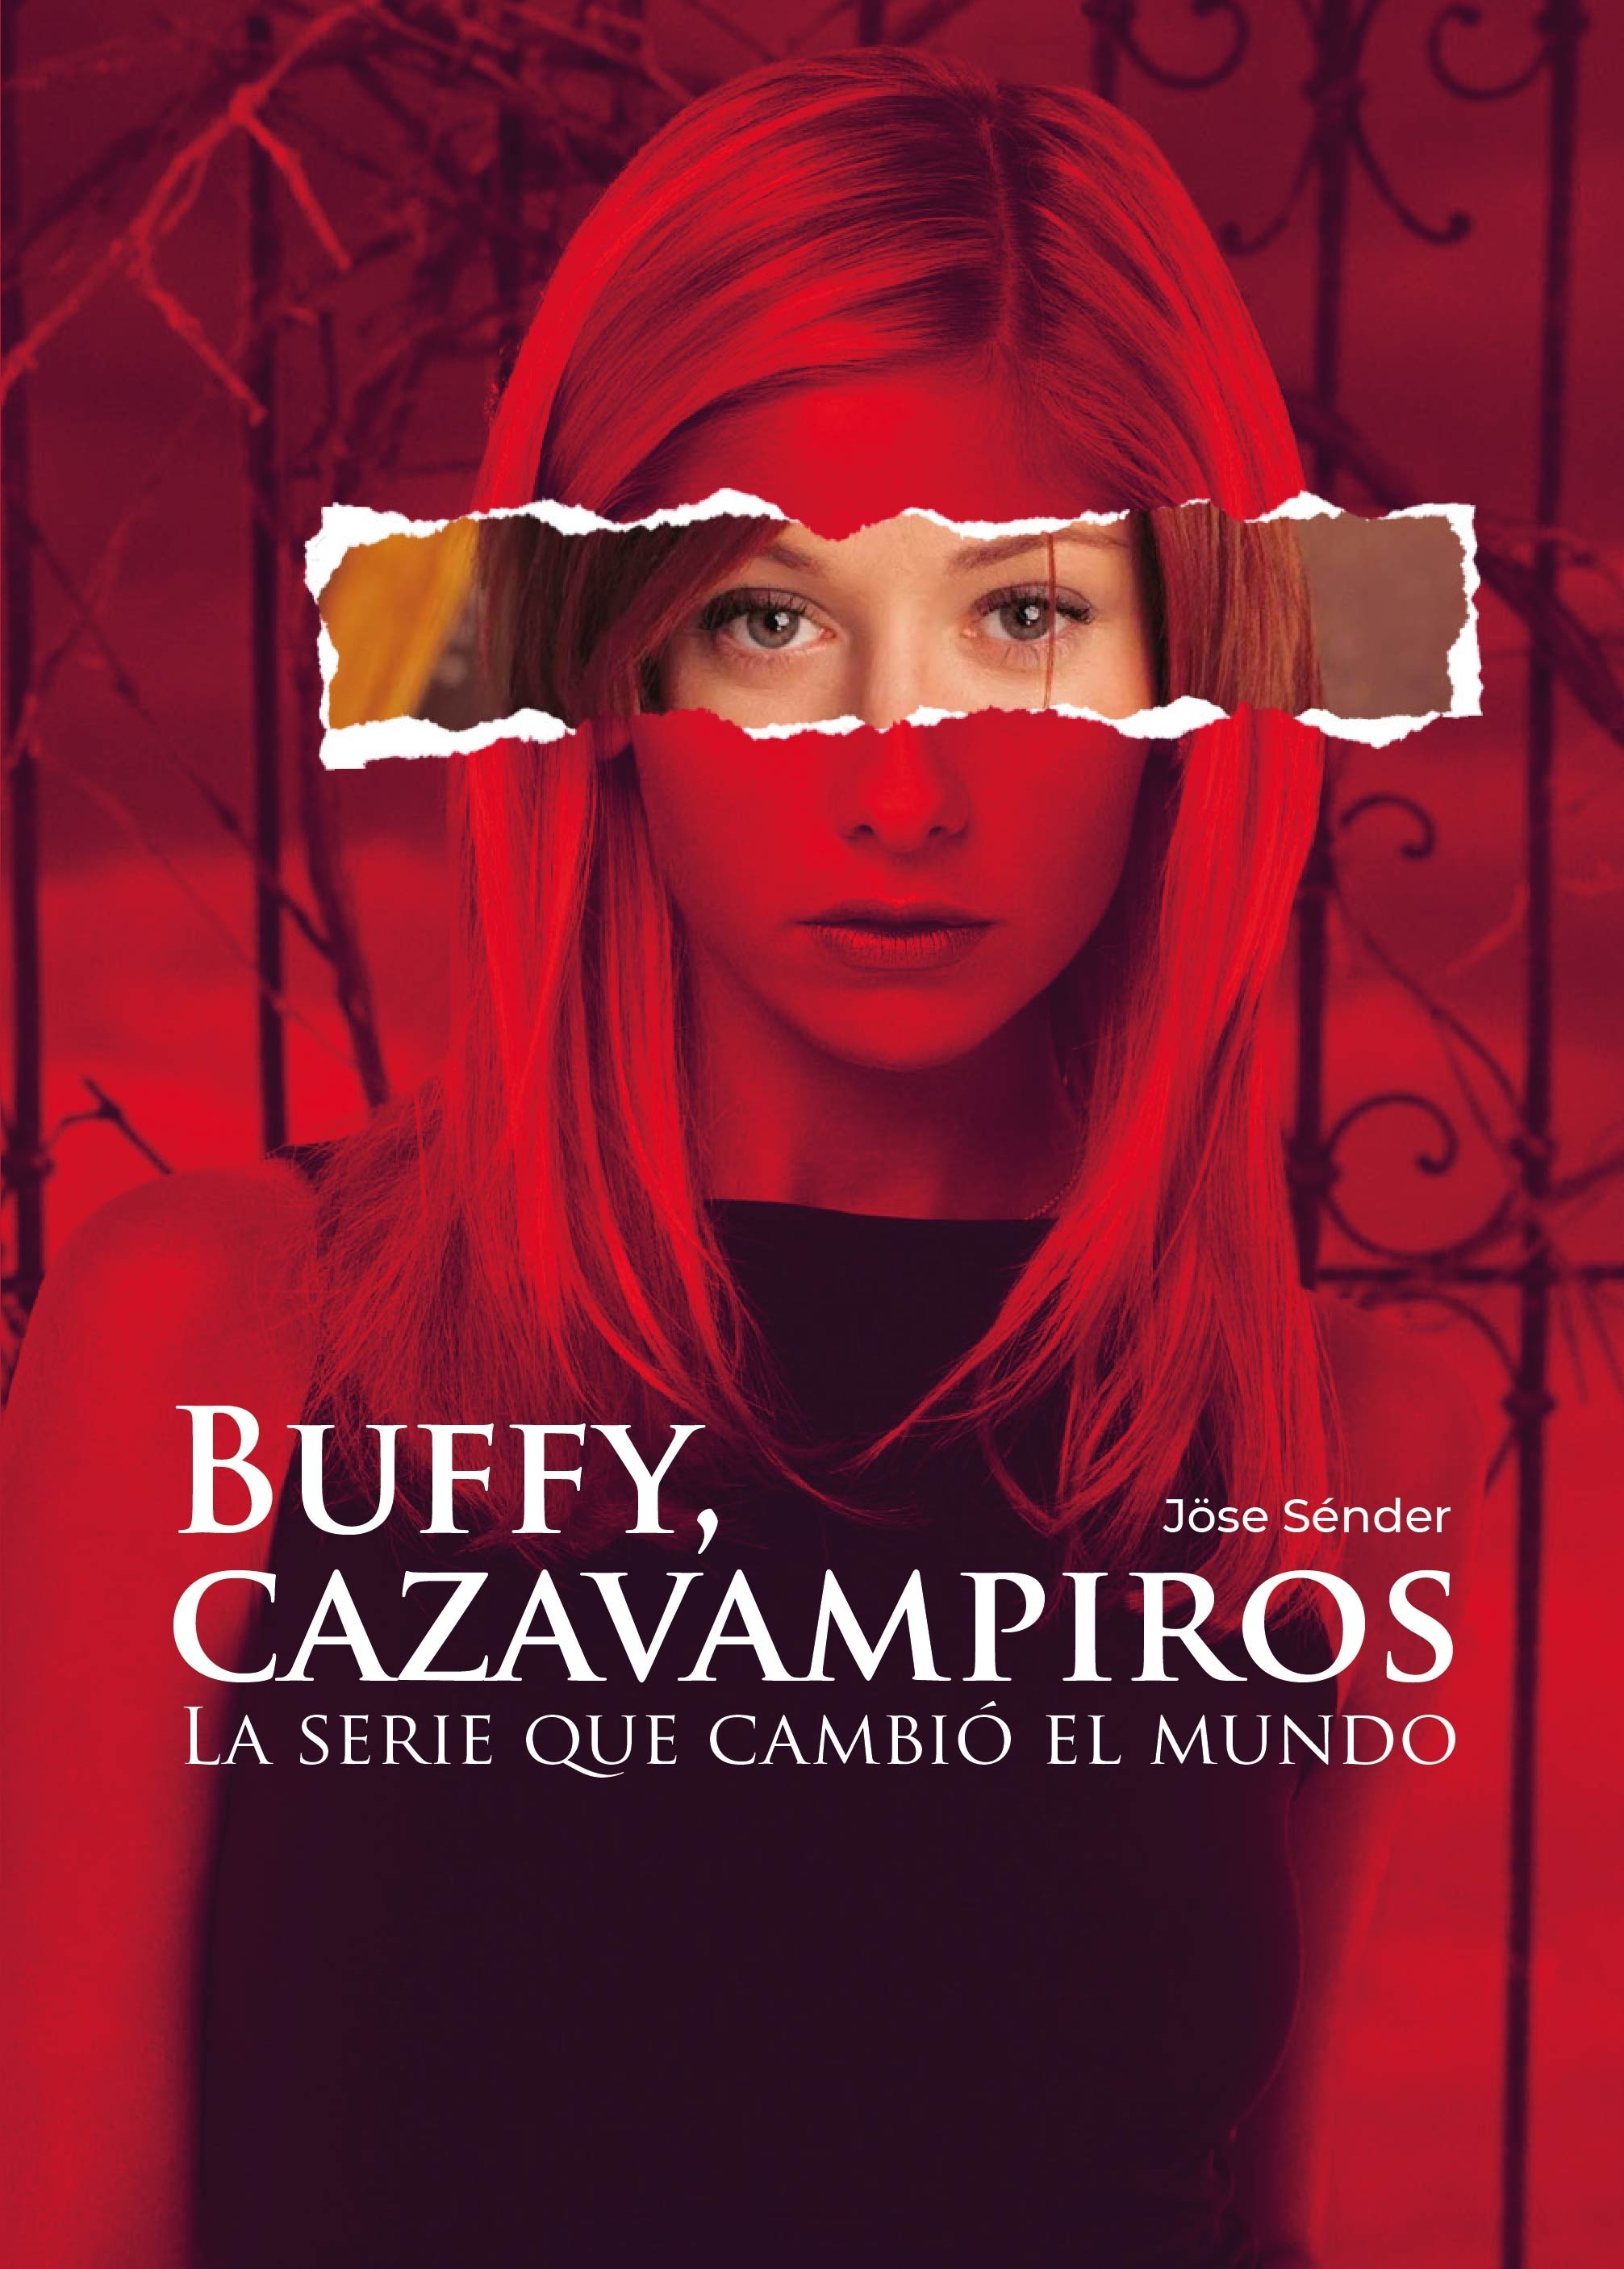 Buffy Cazavampiros, la serie que cambió el mundo